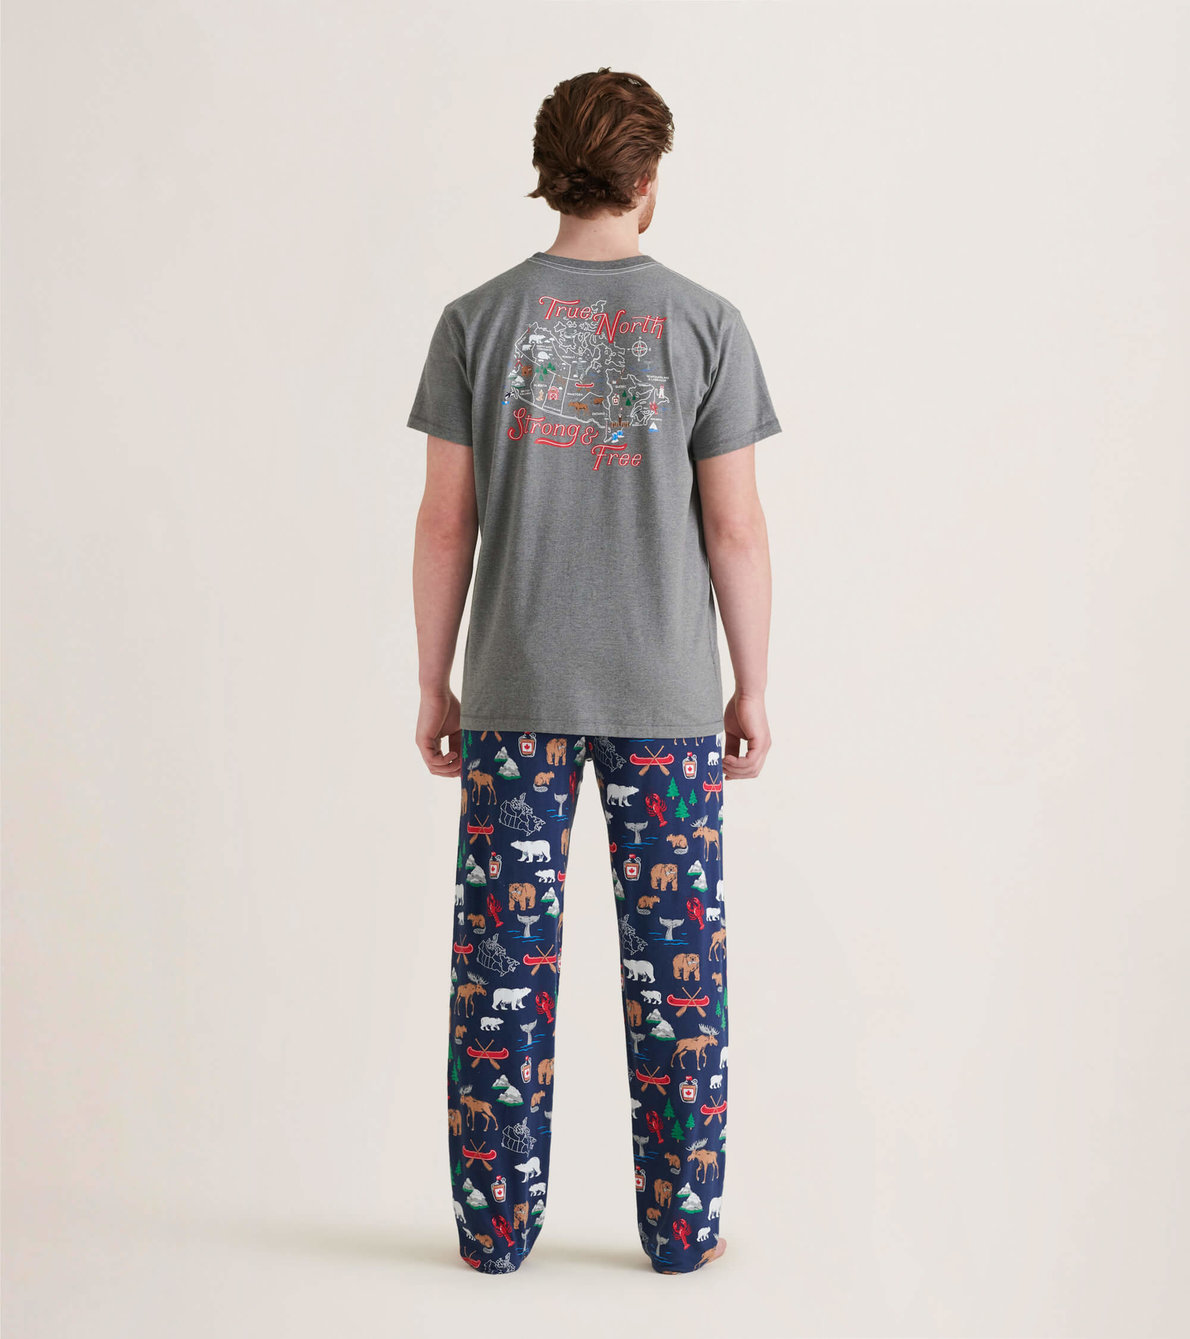 Black and White Buffalo Plaid Pants, Flannel Pajama Pants, Adult Unisex Flannel  Pant, Matching Christmas Pajamas Pants Shirt Option 